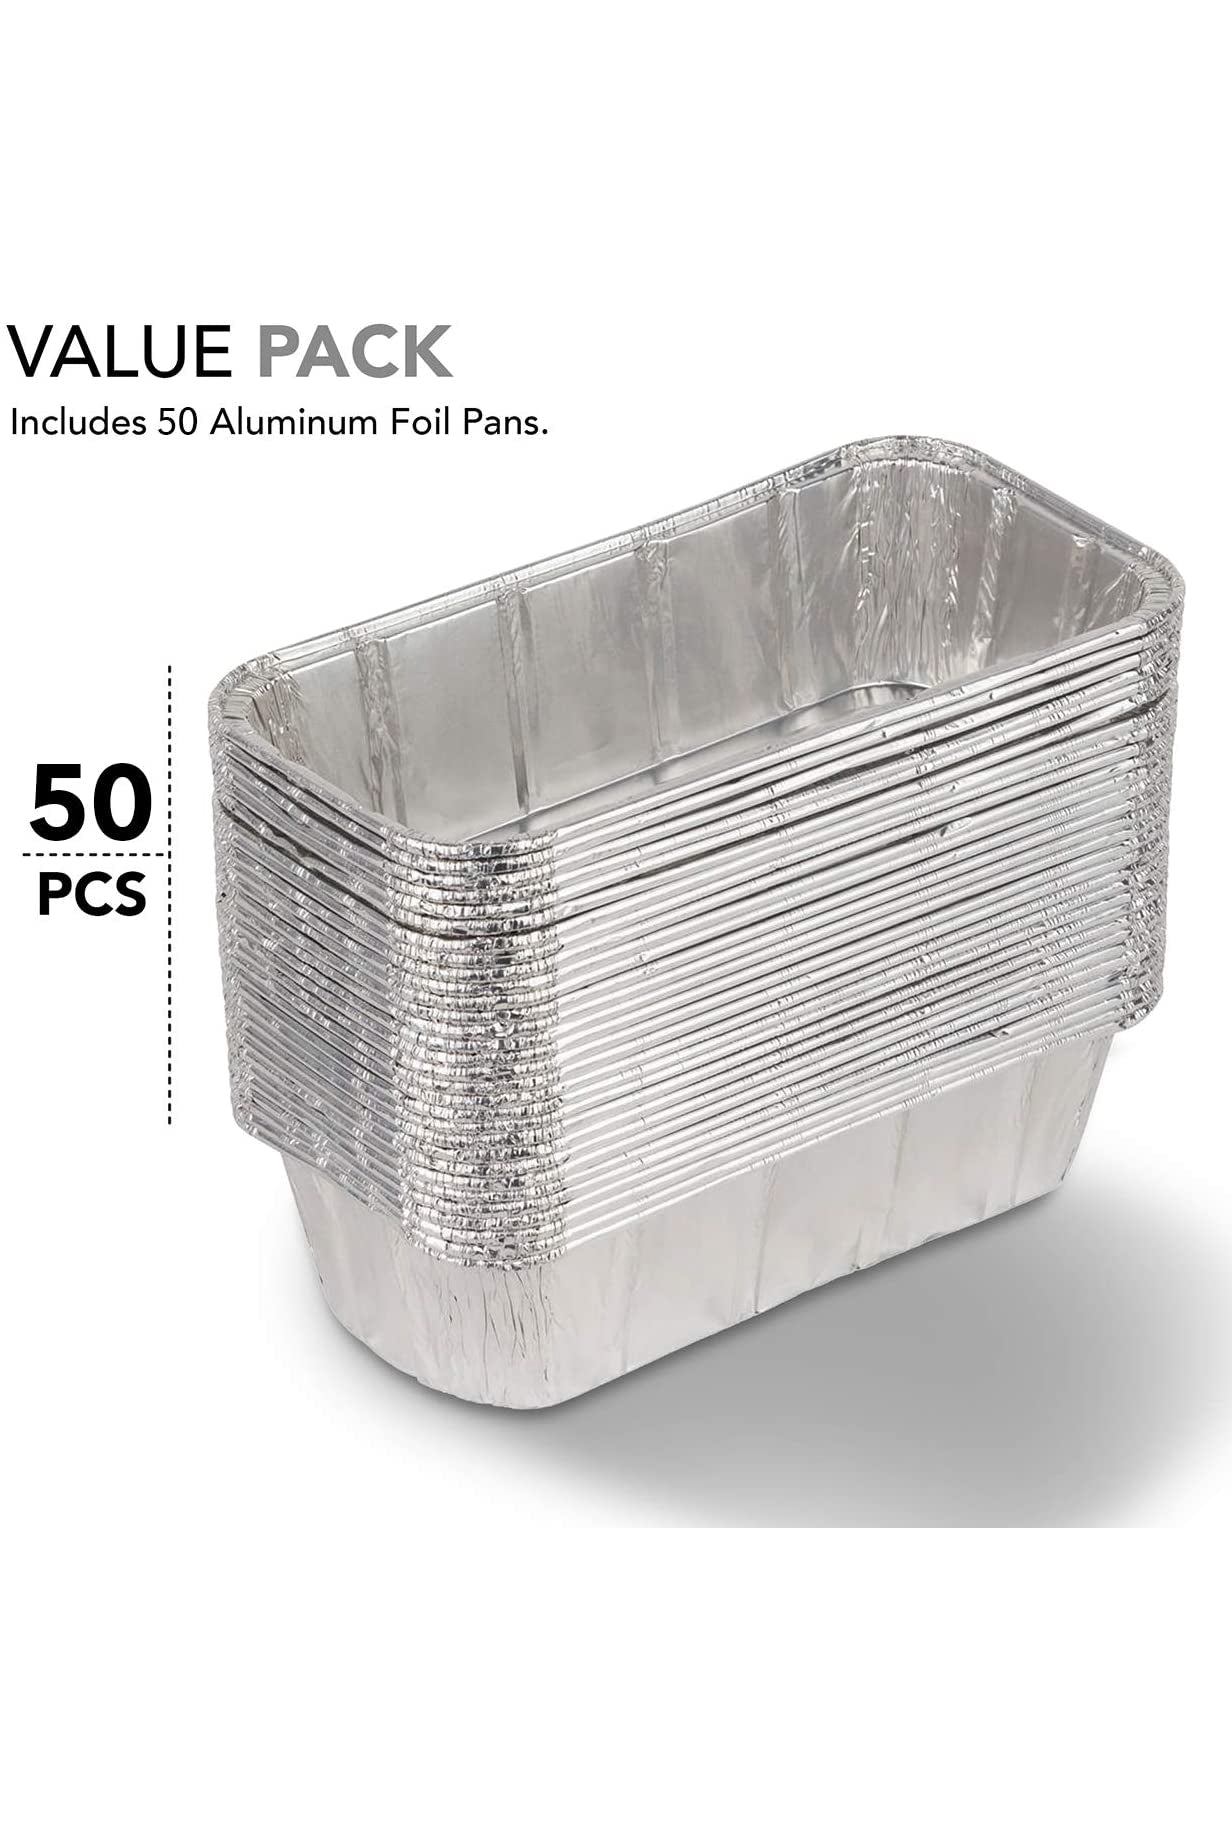 50pcs Aluminum Pans Cookie Sheet Baking Pans